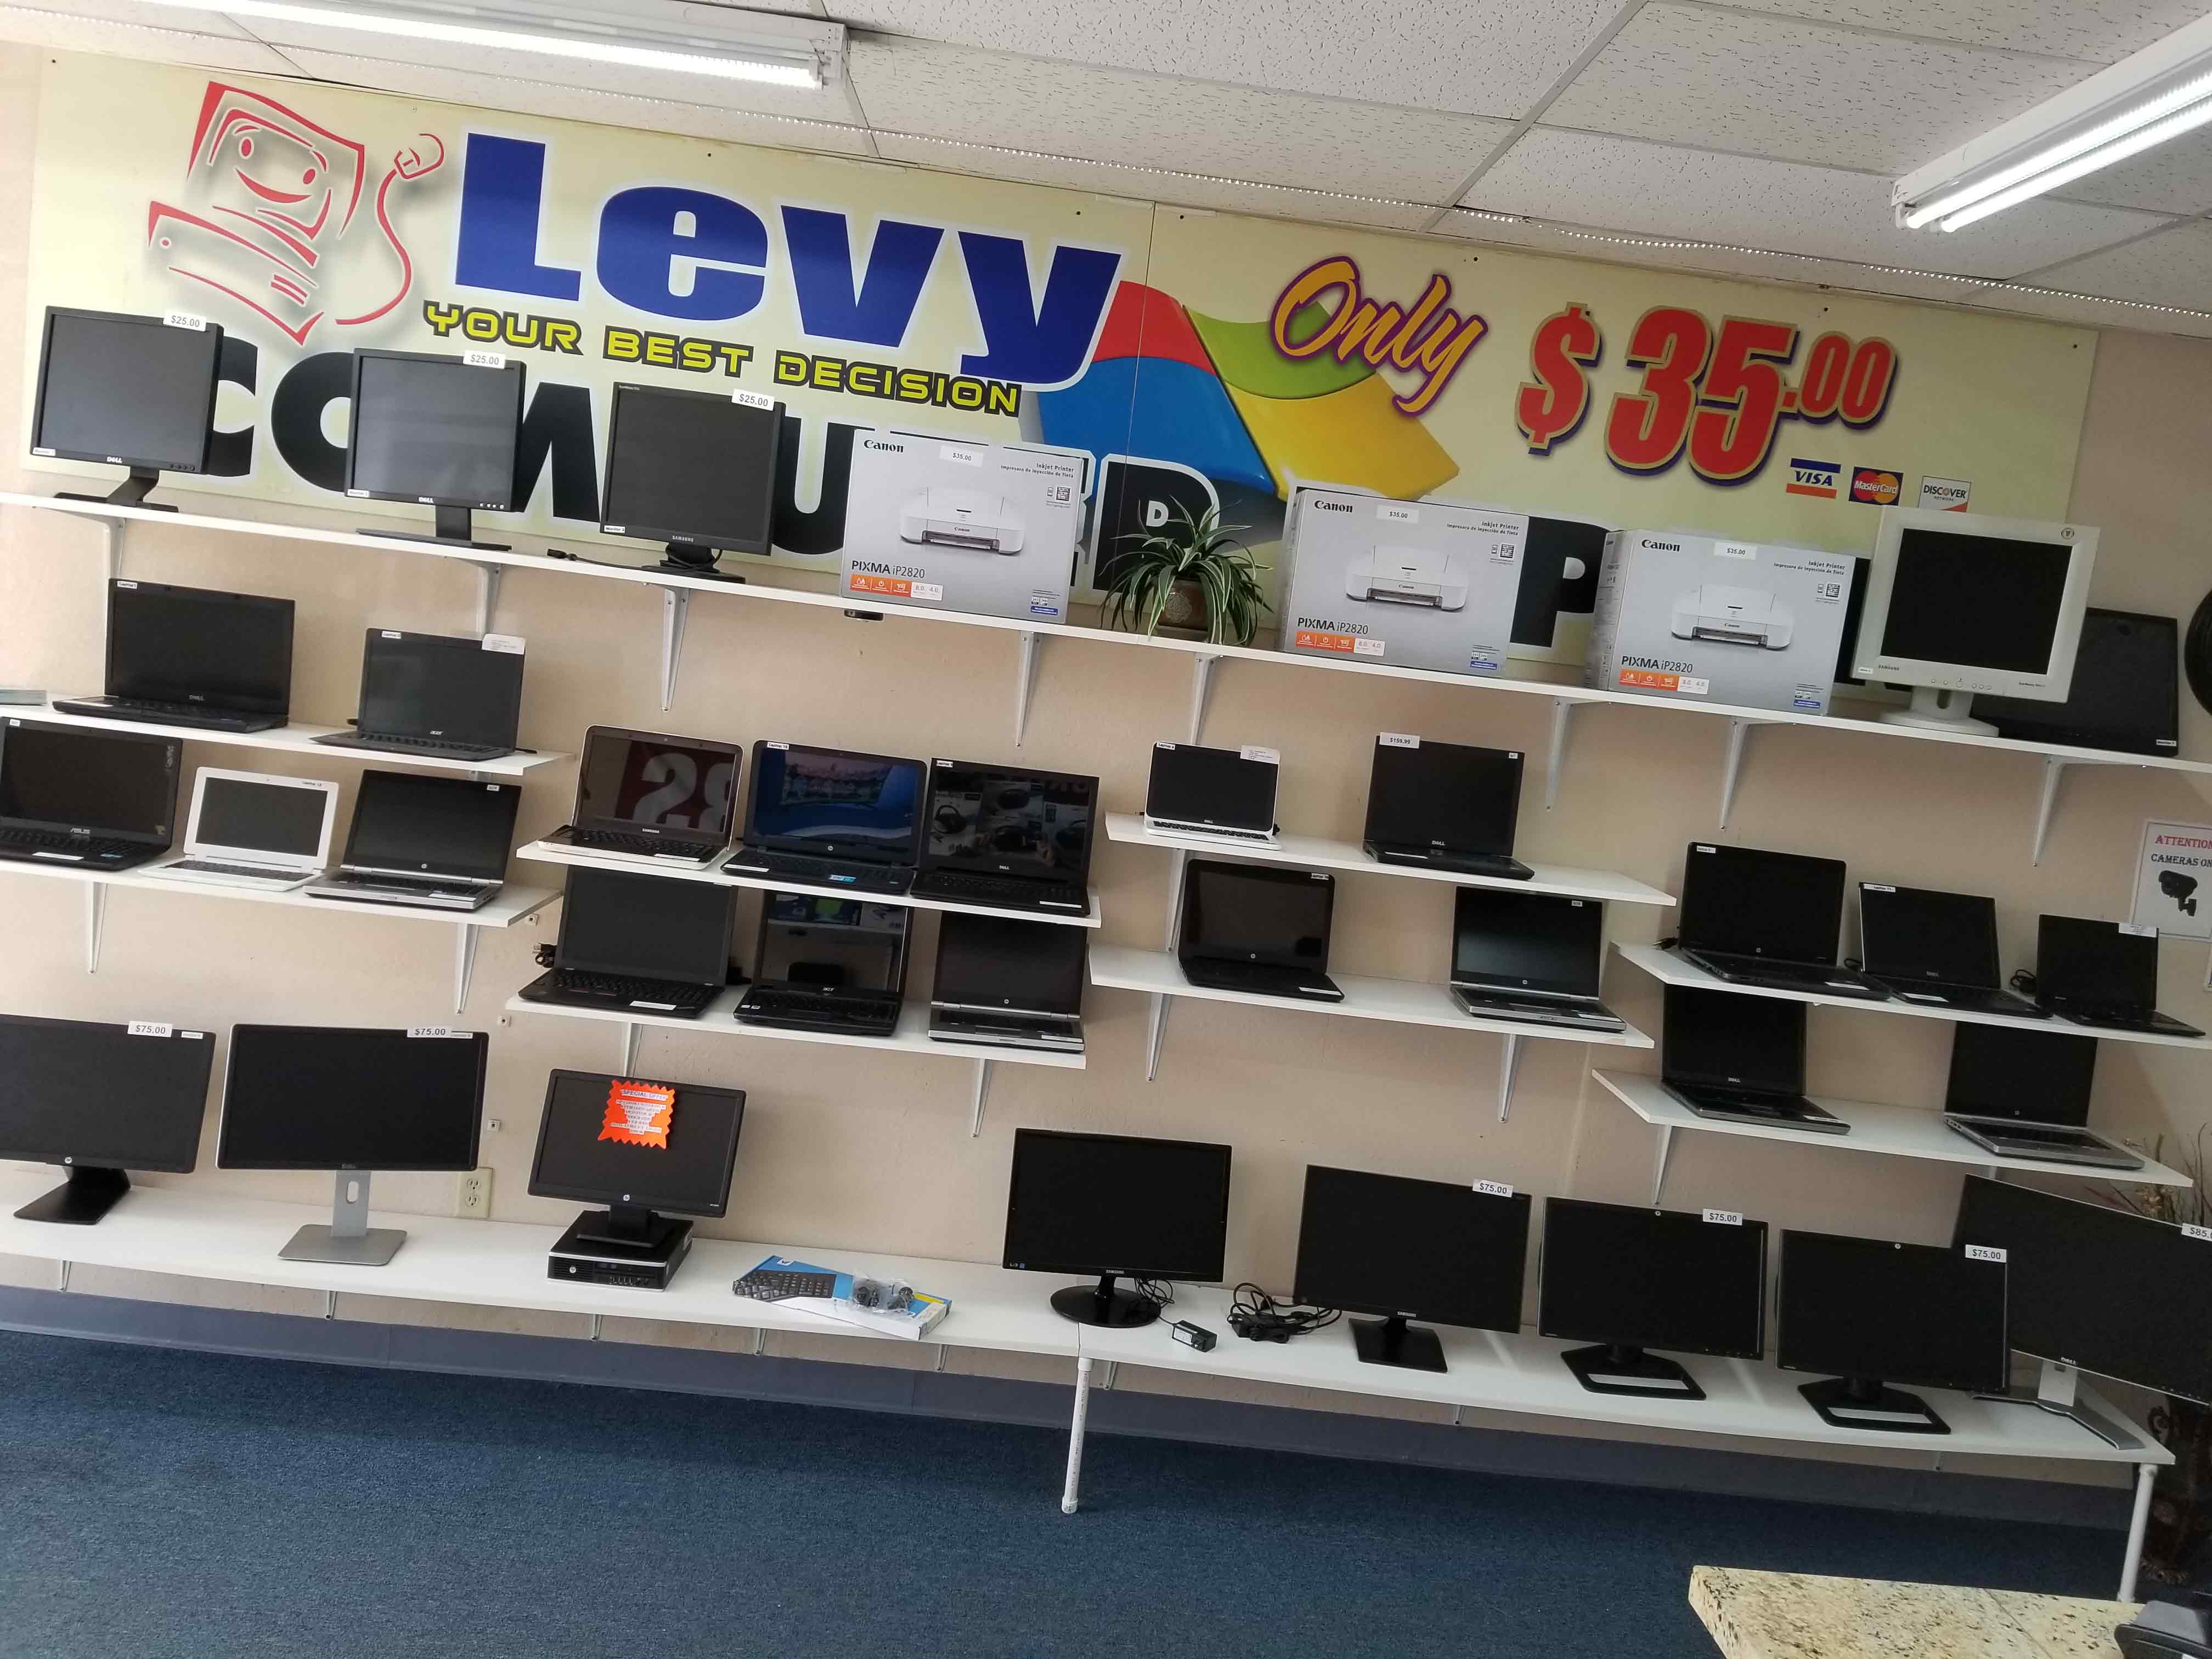 Foto Levy Computer Repair LLC de Servicios de Reparación de Computadoras en Tampa FL - Galería de ListasLocales.com